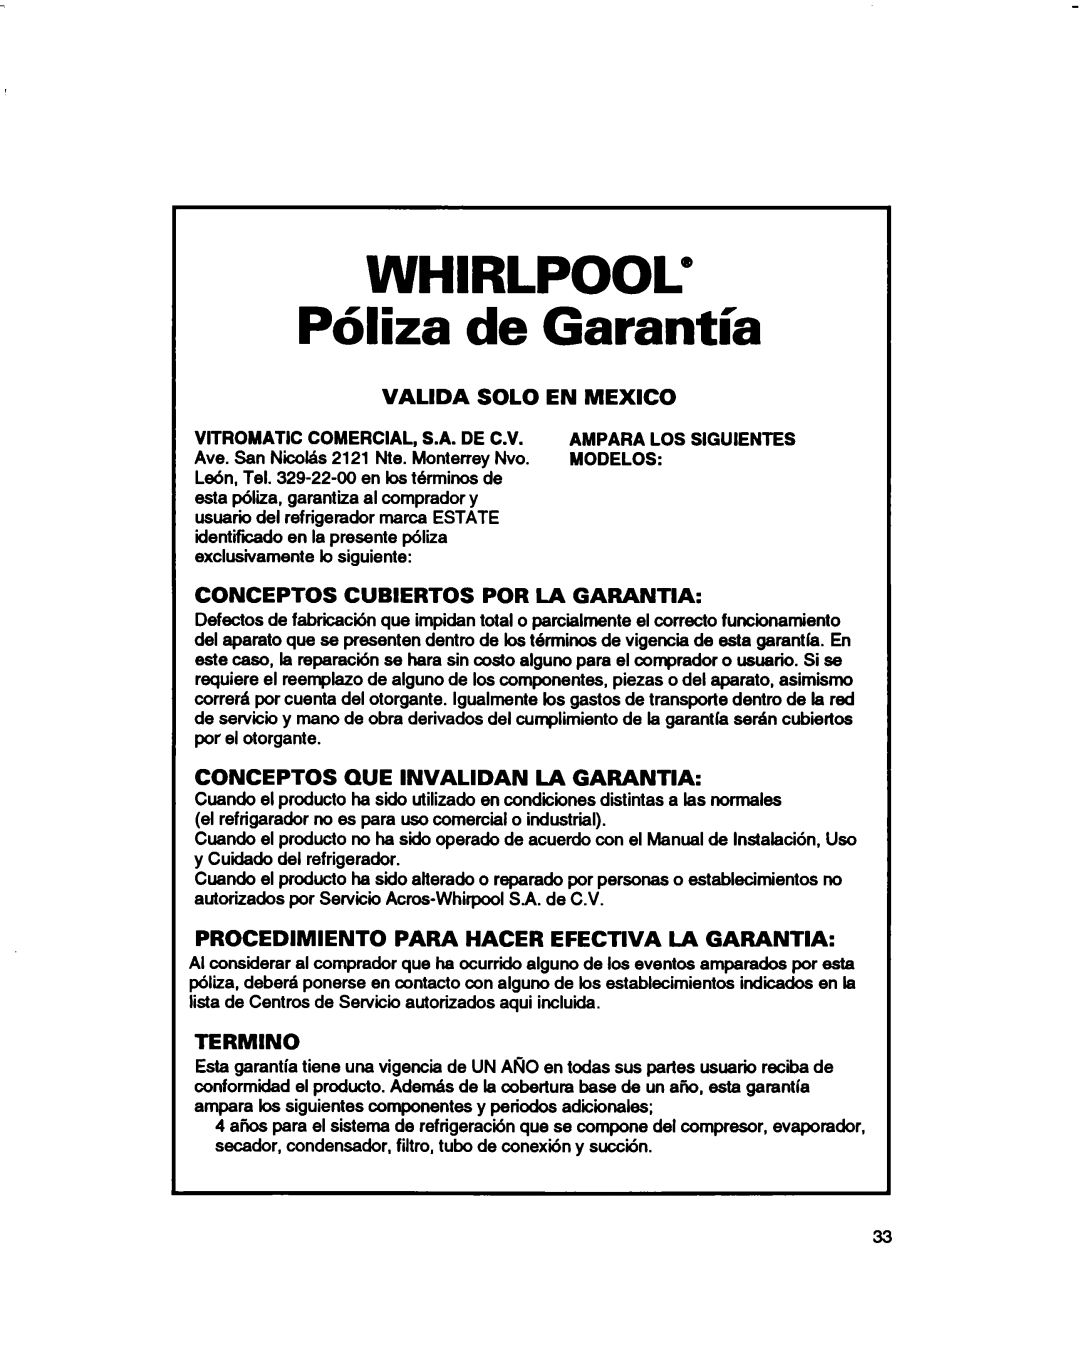 Estate 2173445 warranty Whirlpool@, P6liza, Valida, Solo, En Mexico, Cubiertos, Por La Garantia, Termino 